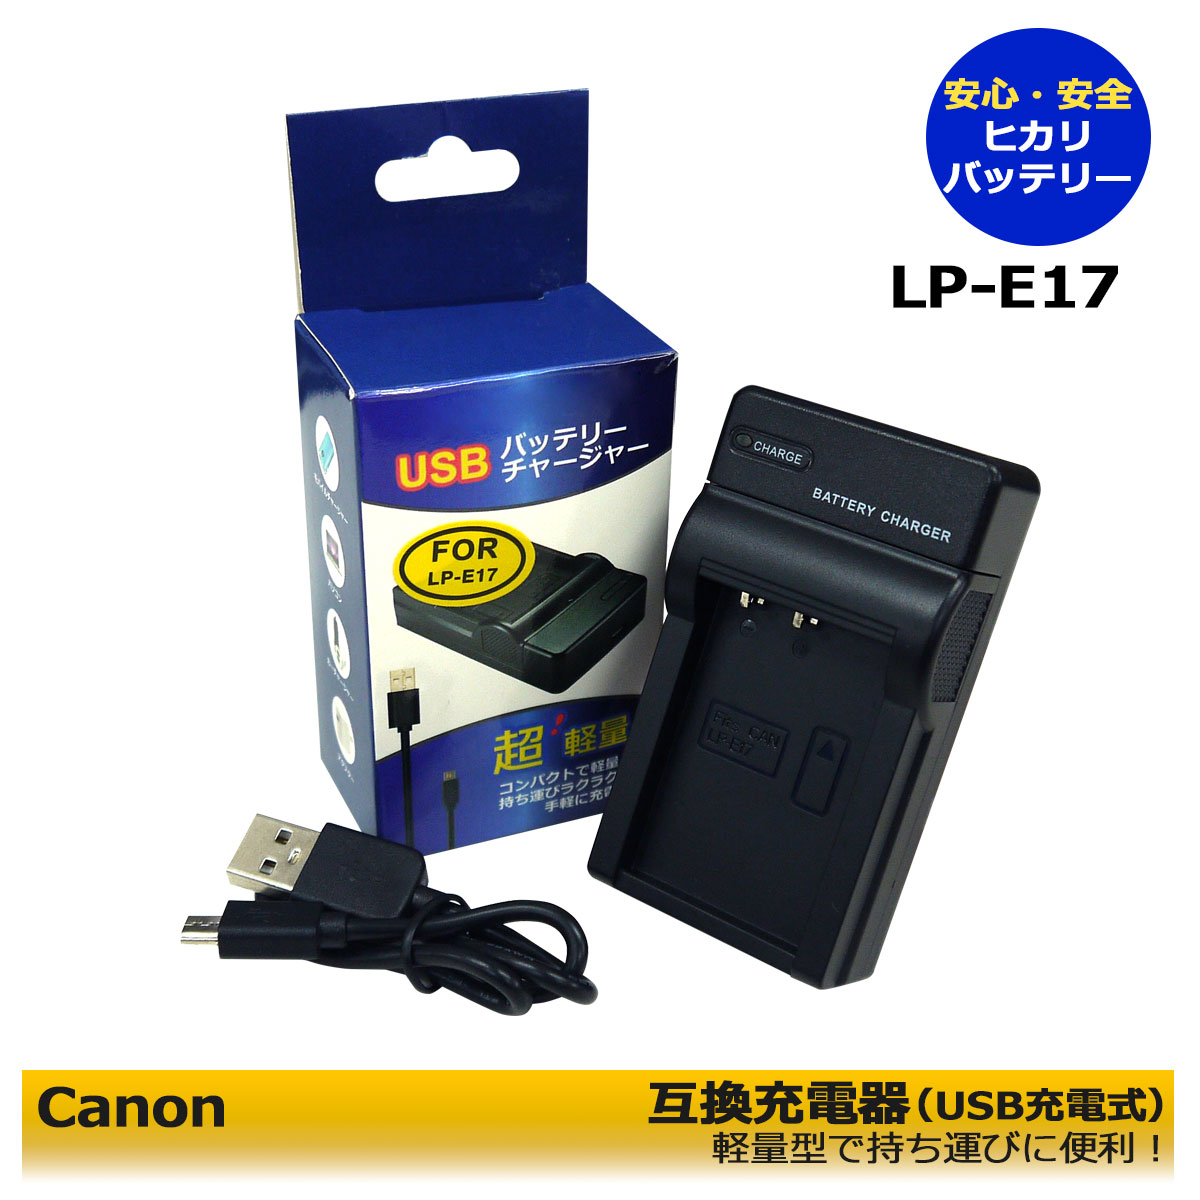 売れ筋新商品 canon 純正 LP-E17 LC-E17 充電池 バッテリー ストラップ